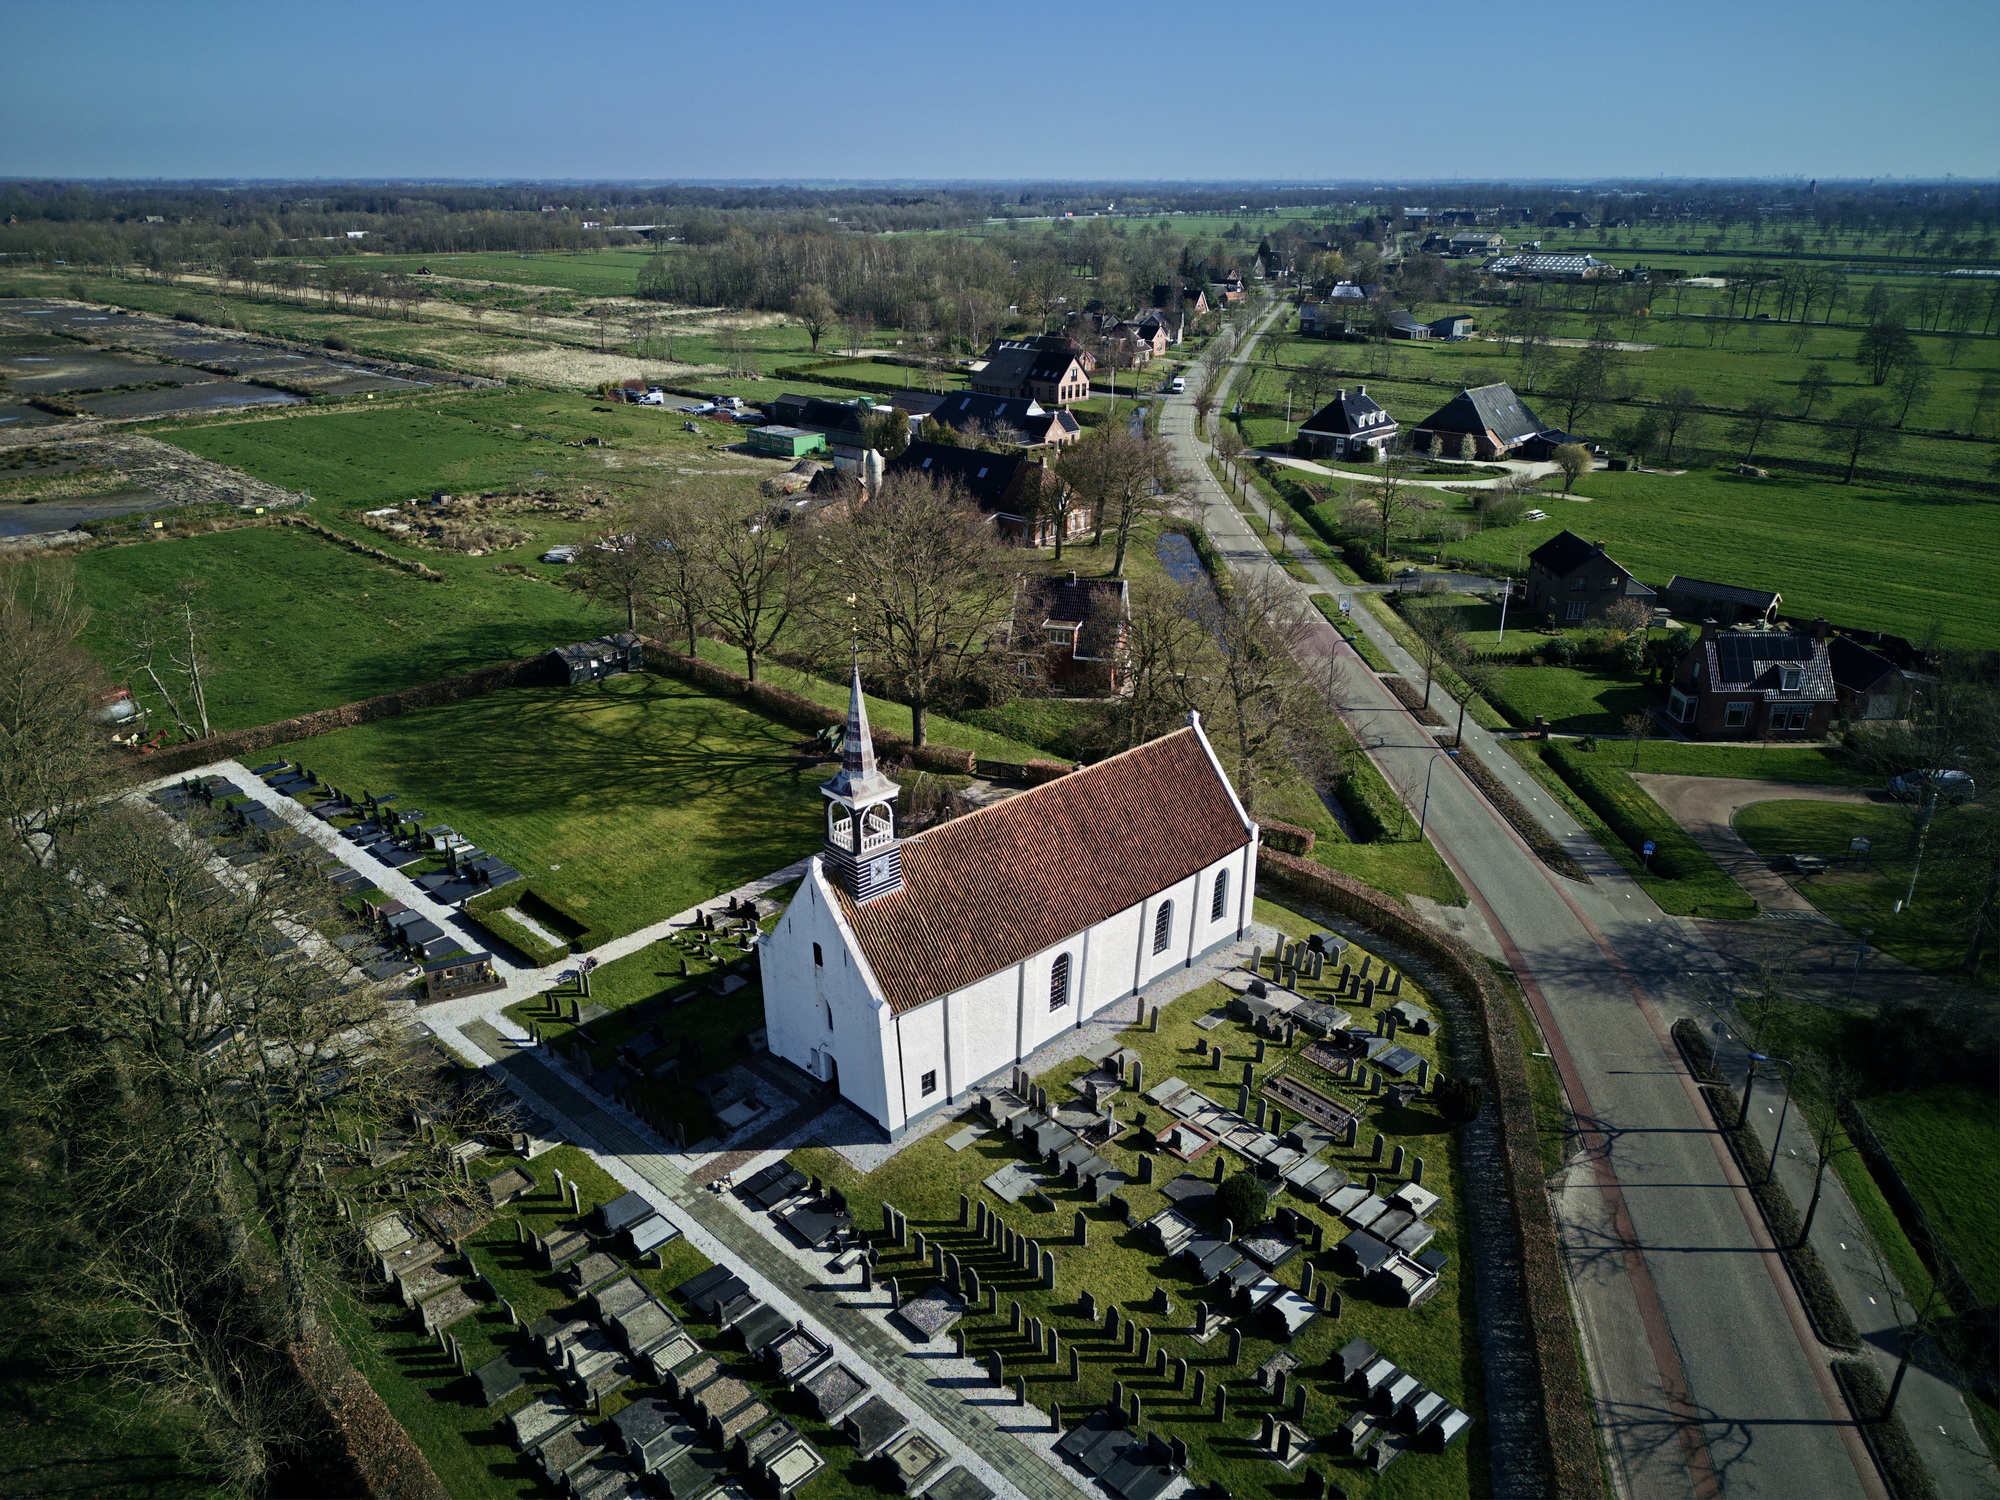 Dronefoto van de kerk. Foto: ©Jur Kuipers.Dronefoto van de kerk. Foto: ©Jur Kuipers.